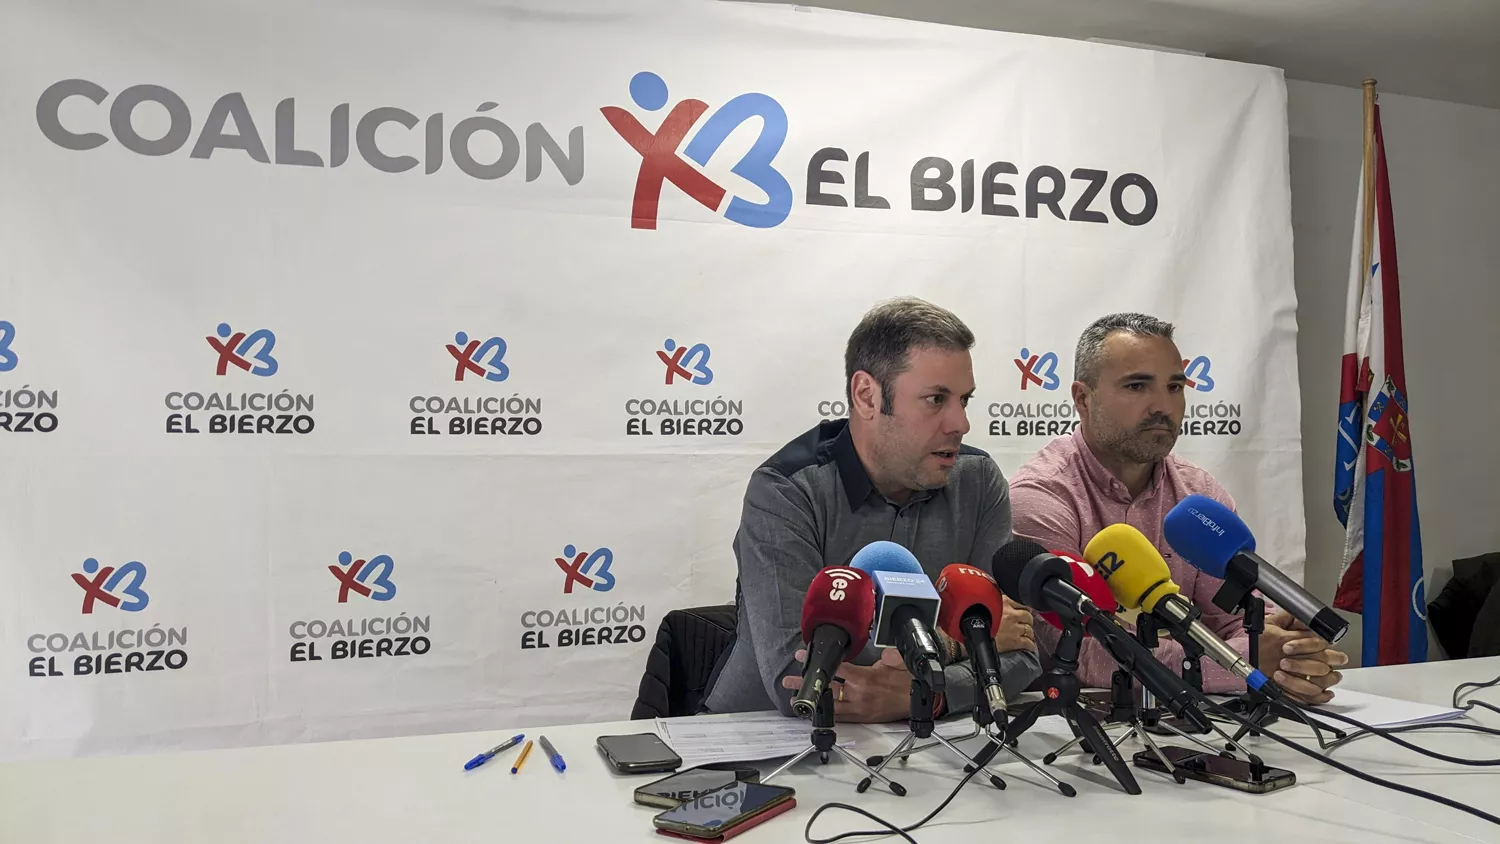 Imagen de la rueda de prensa de Coalición por El Bierzo